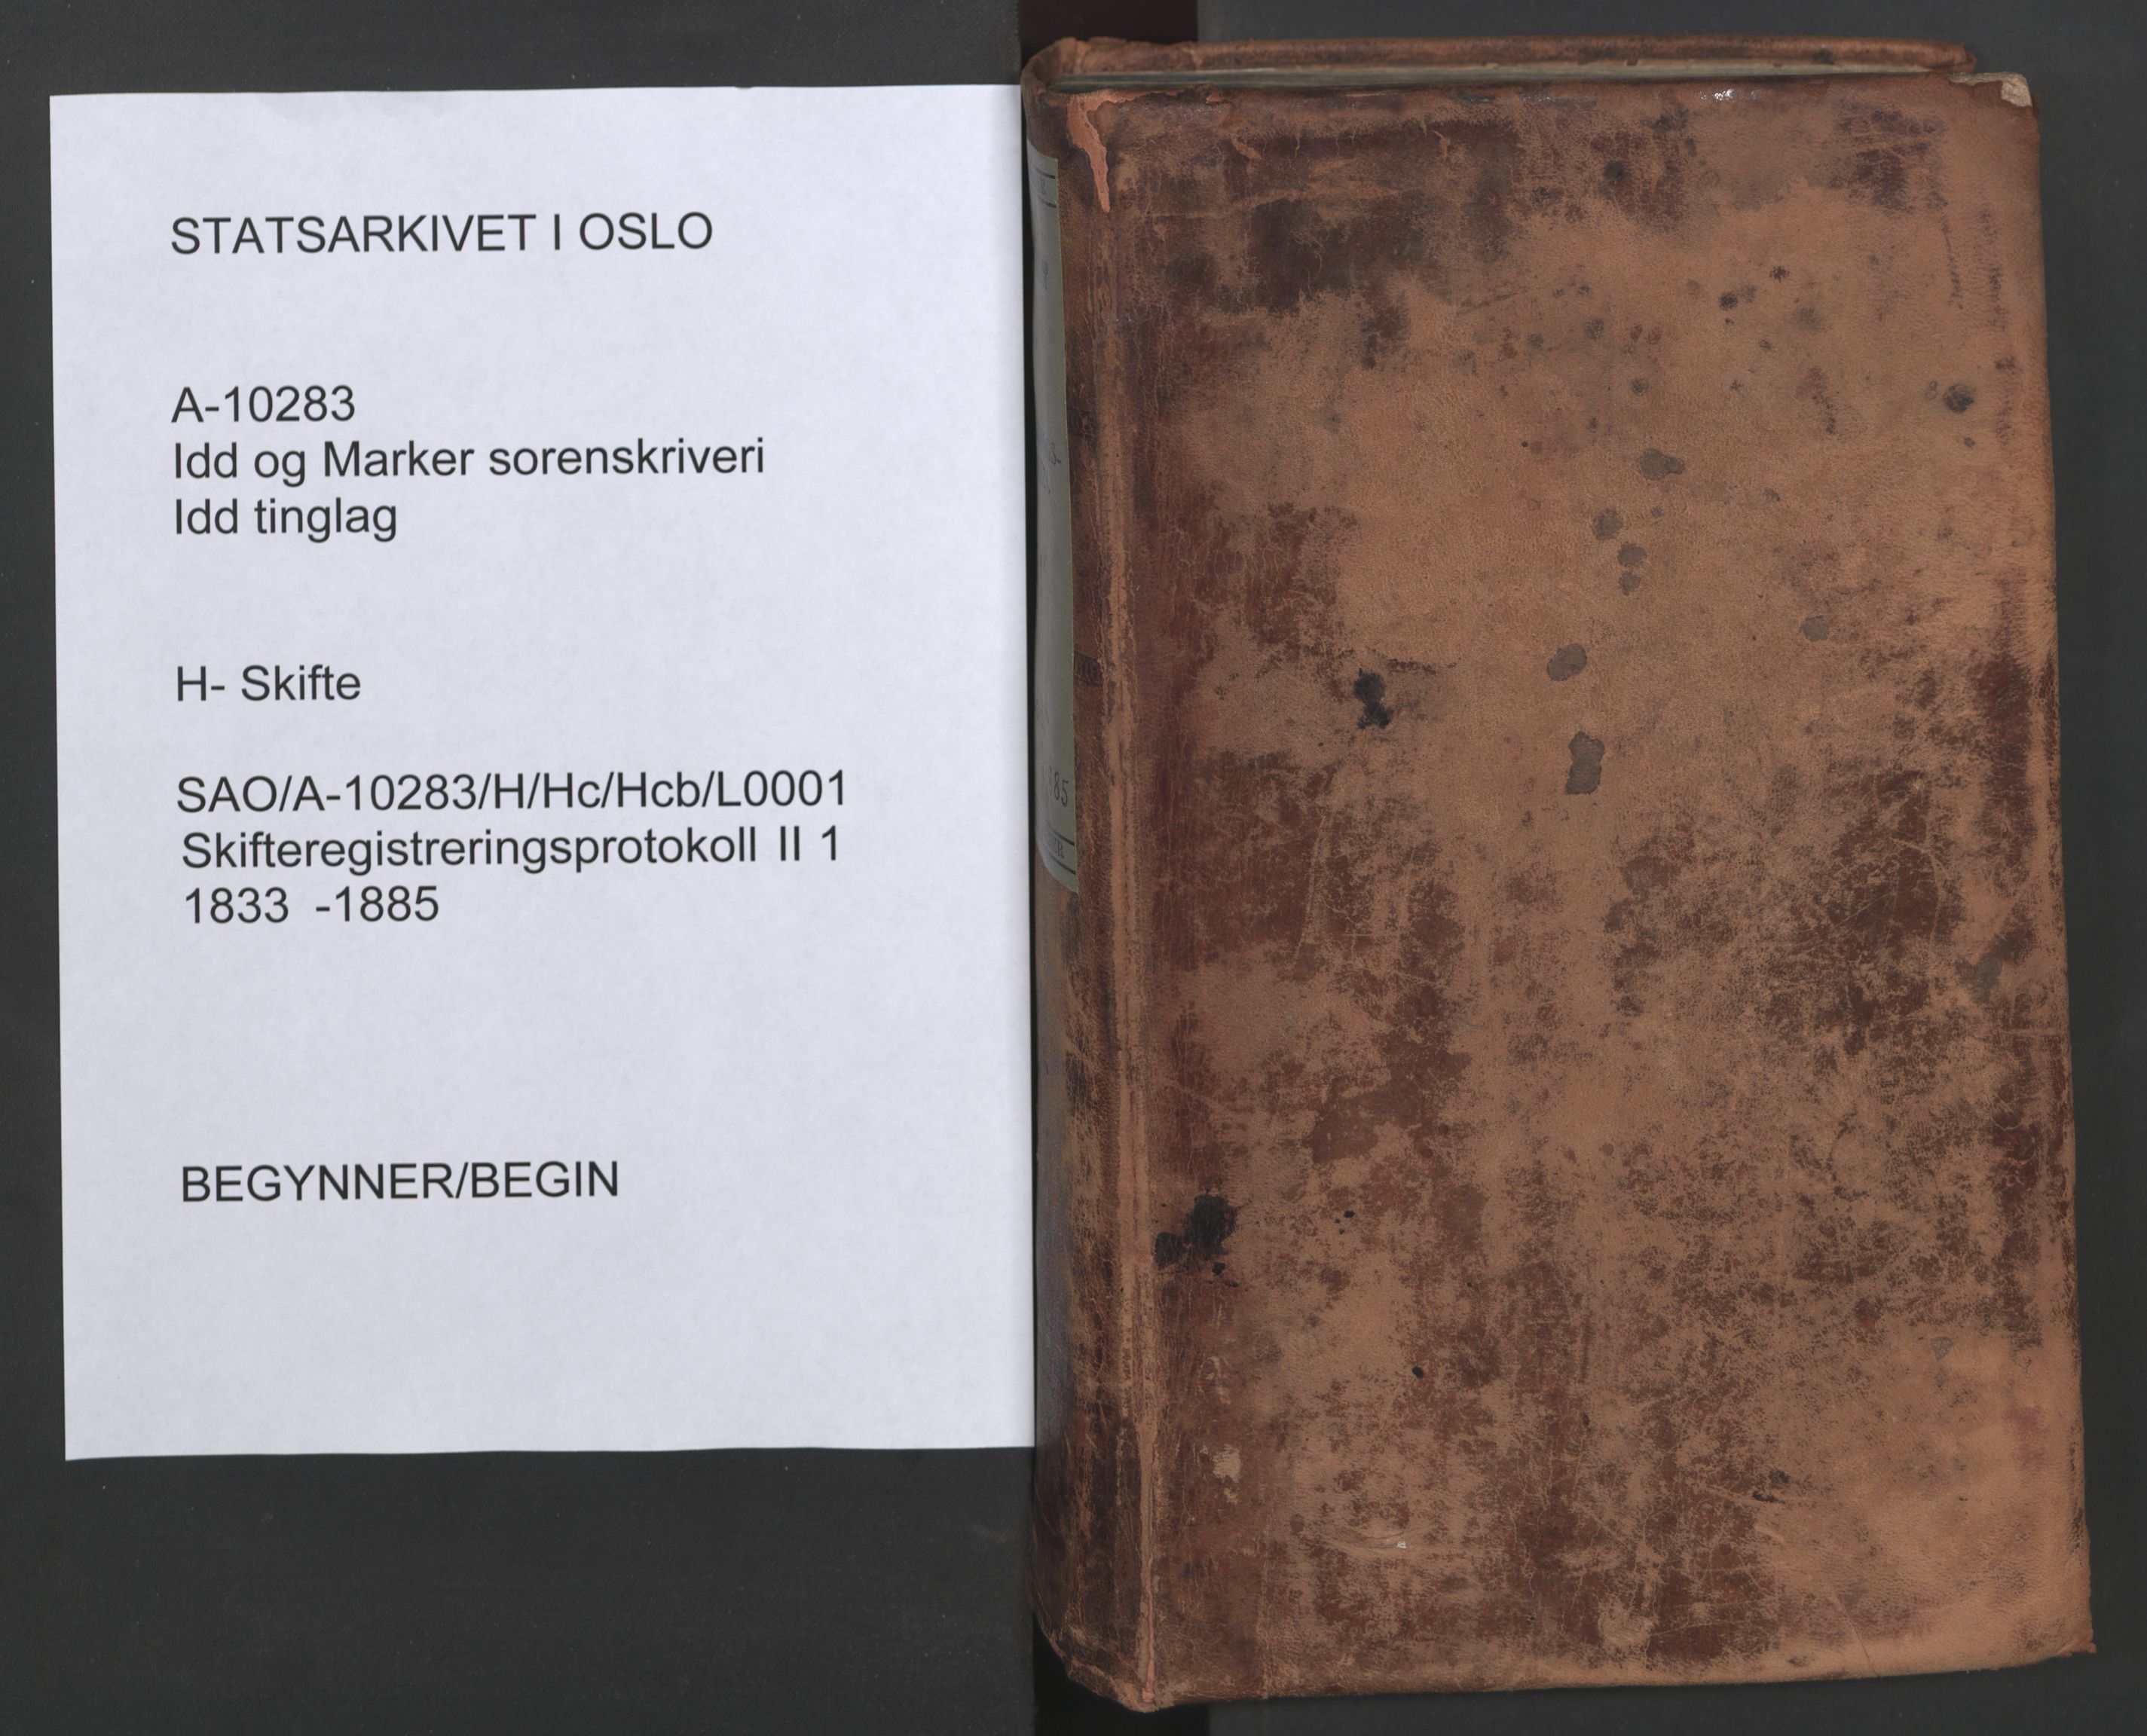 Idd og Marker sorenskriveri, SAO/A-10283/H/Hc/Hcb/L0001: Skifteregistreringsprotokoll, 1833-1885